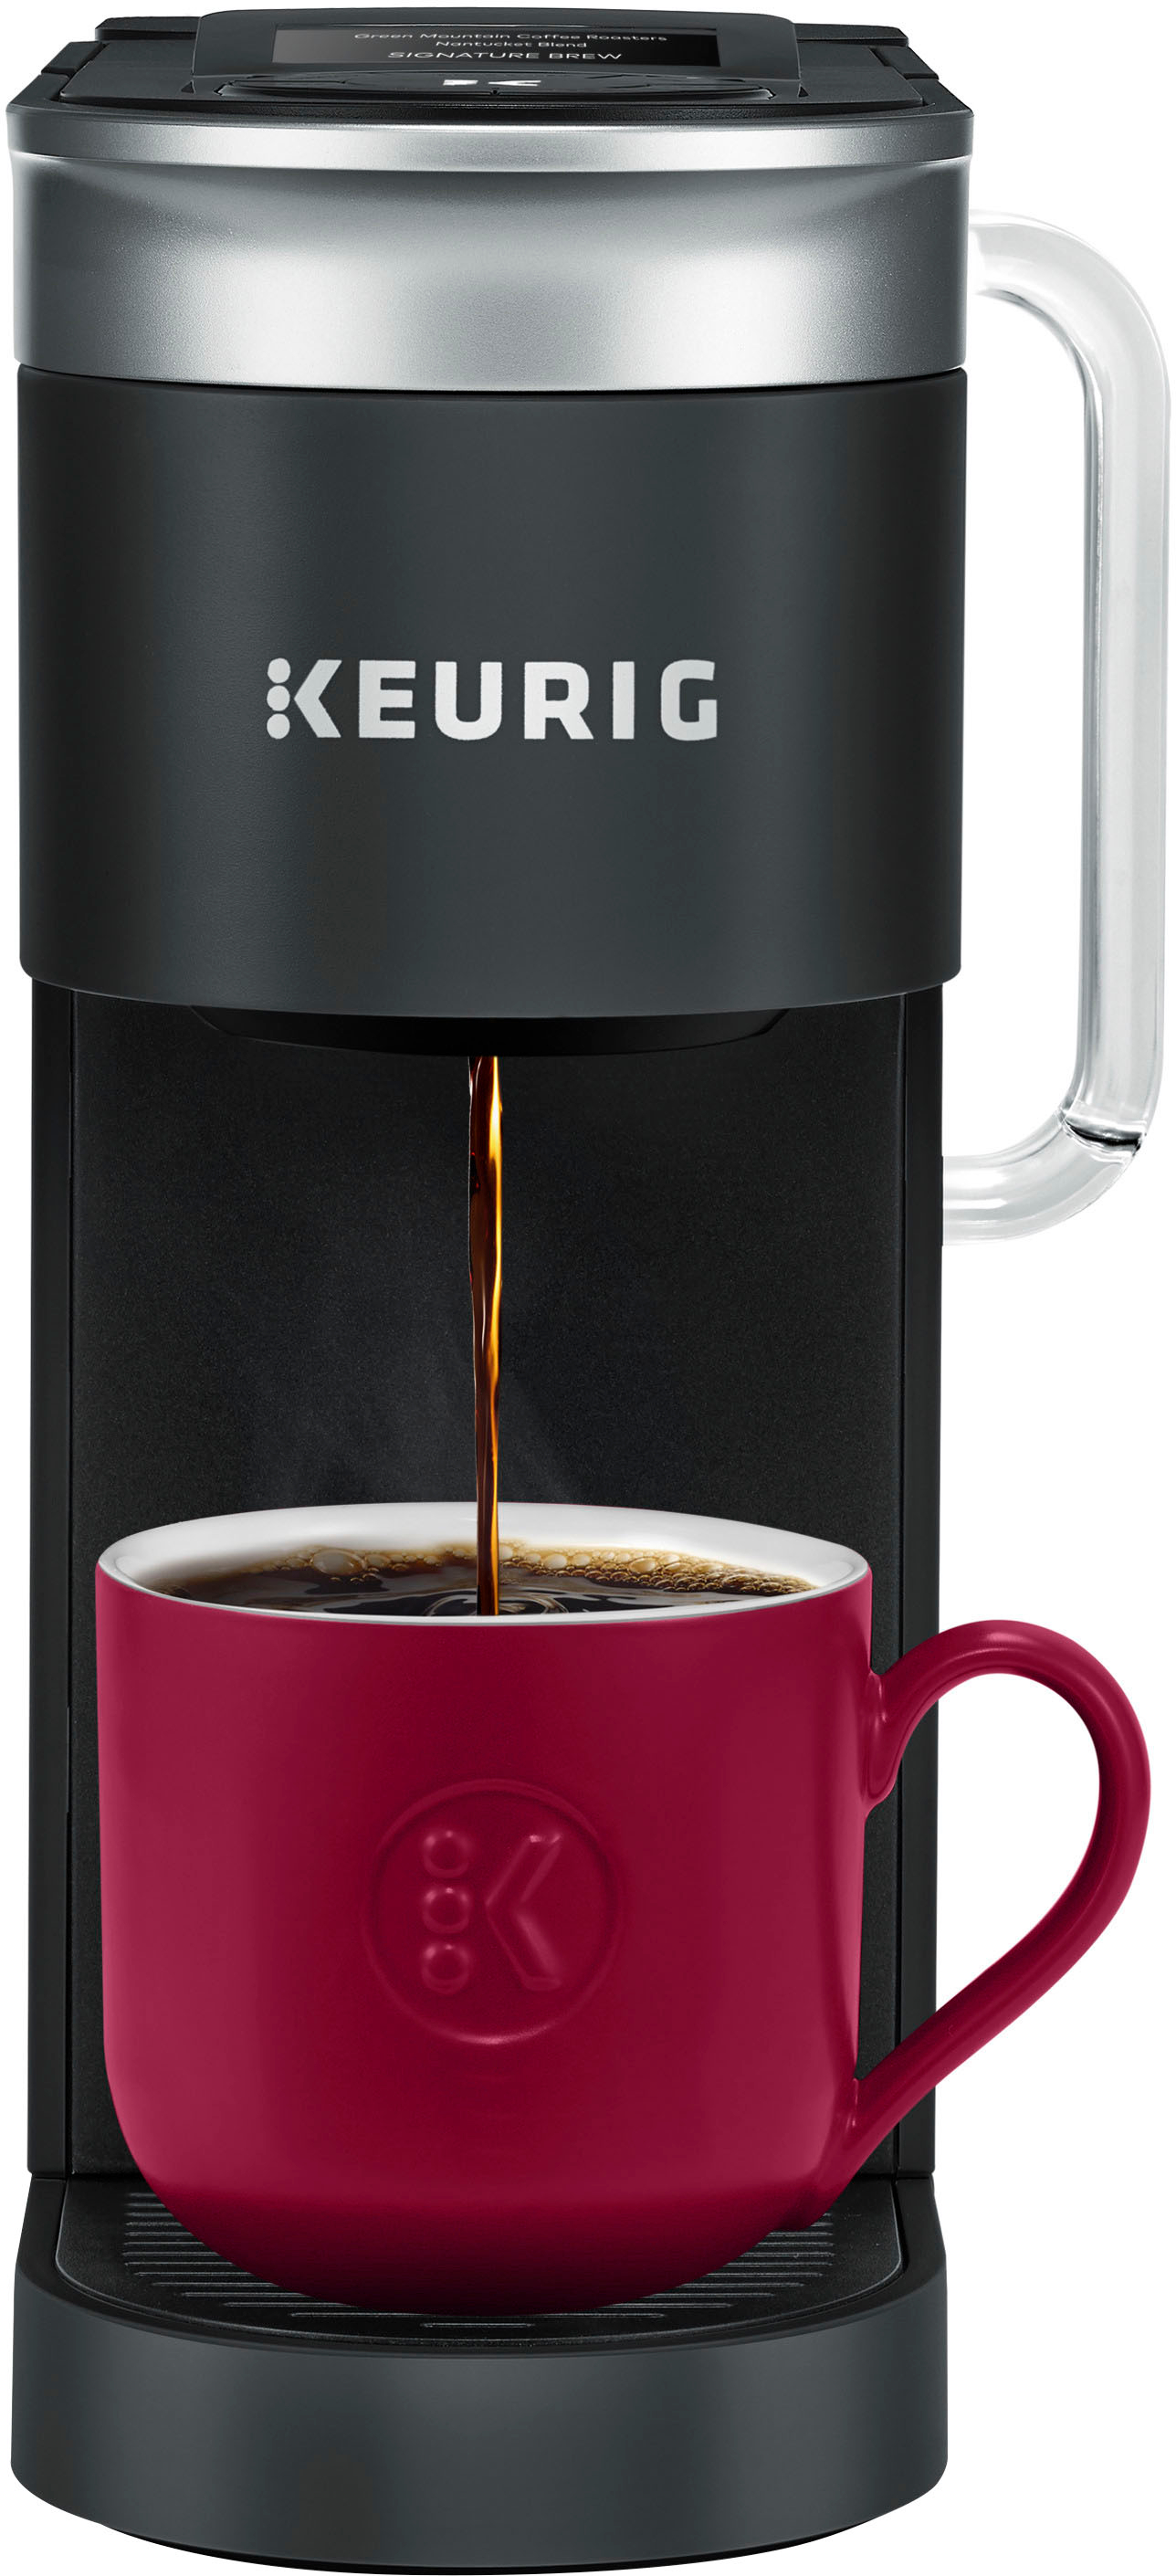 K-Supreme® SMART Single Serve Coffee Maker